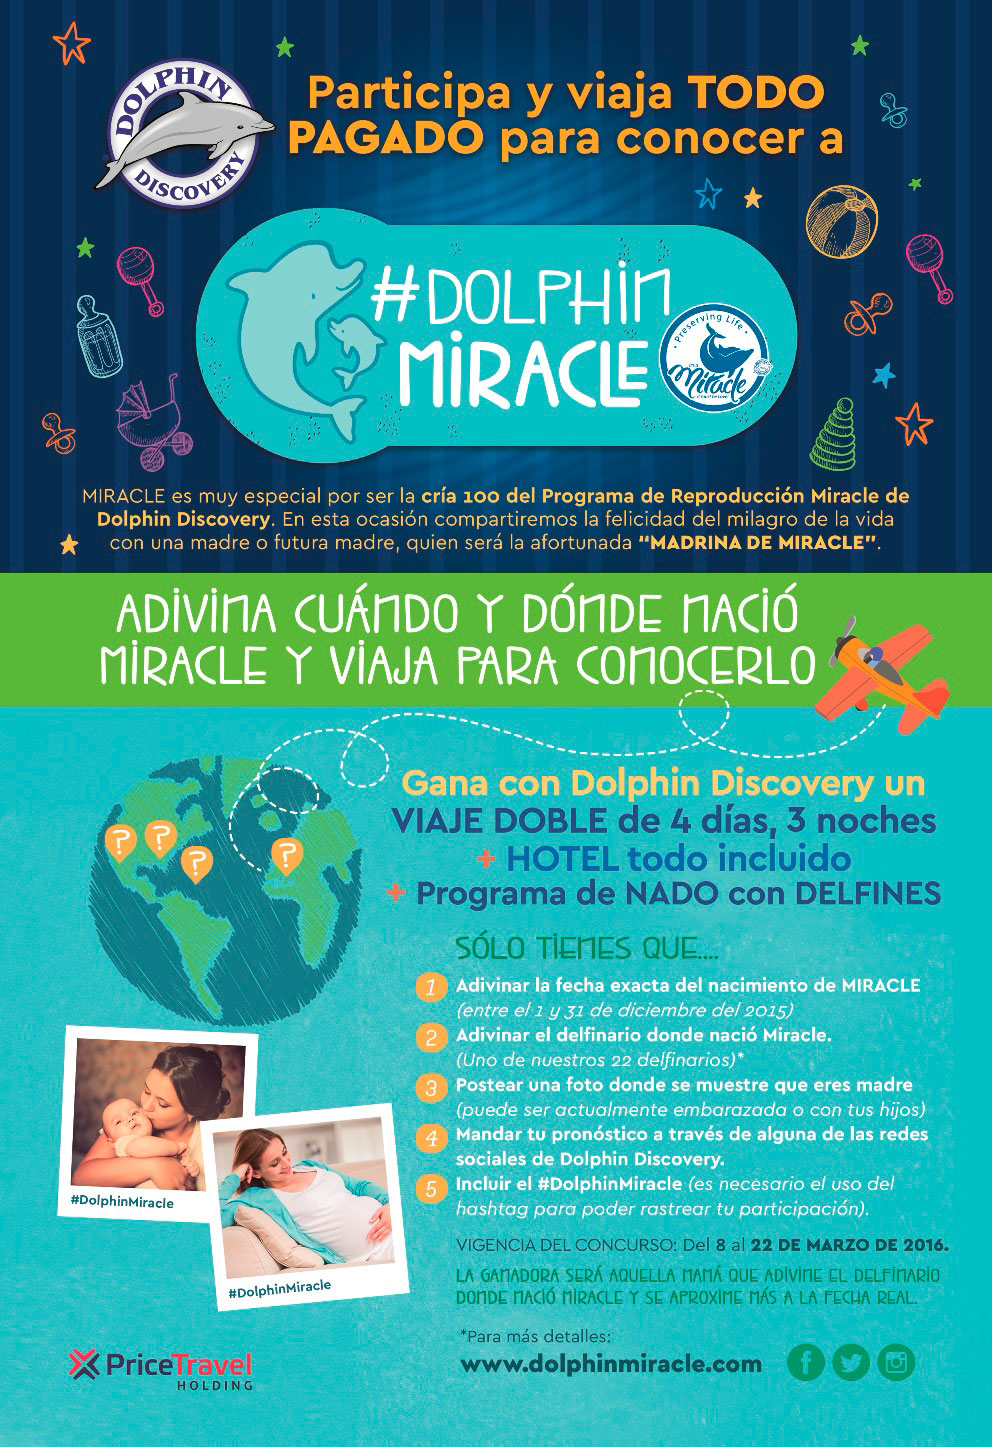 Dolphin Discovery lanza concurso para conocer a #DolphinMiracle